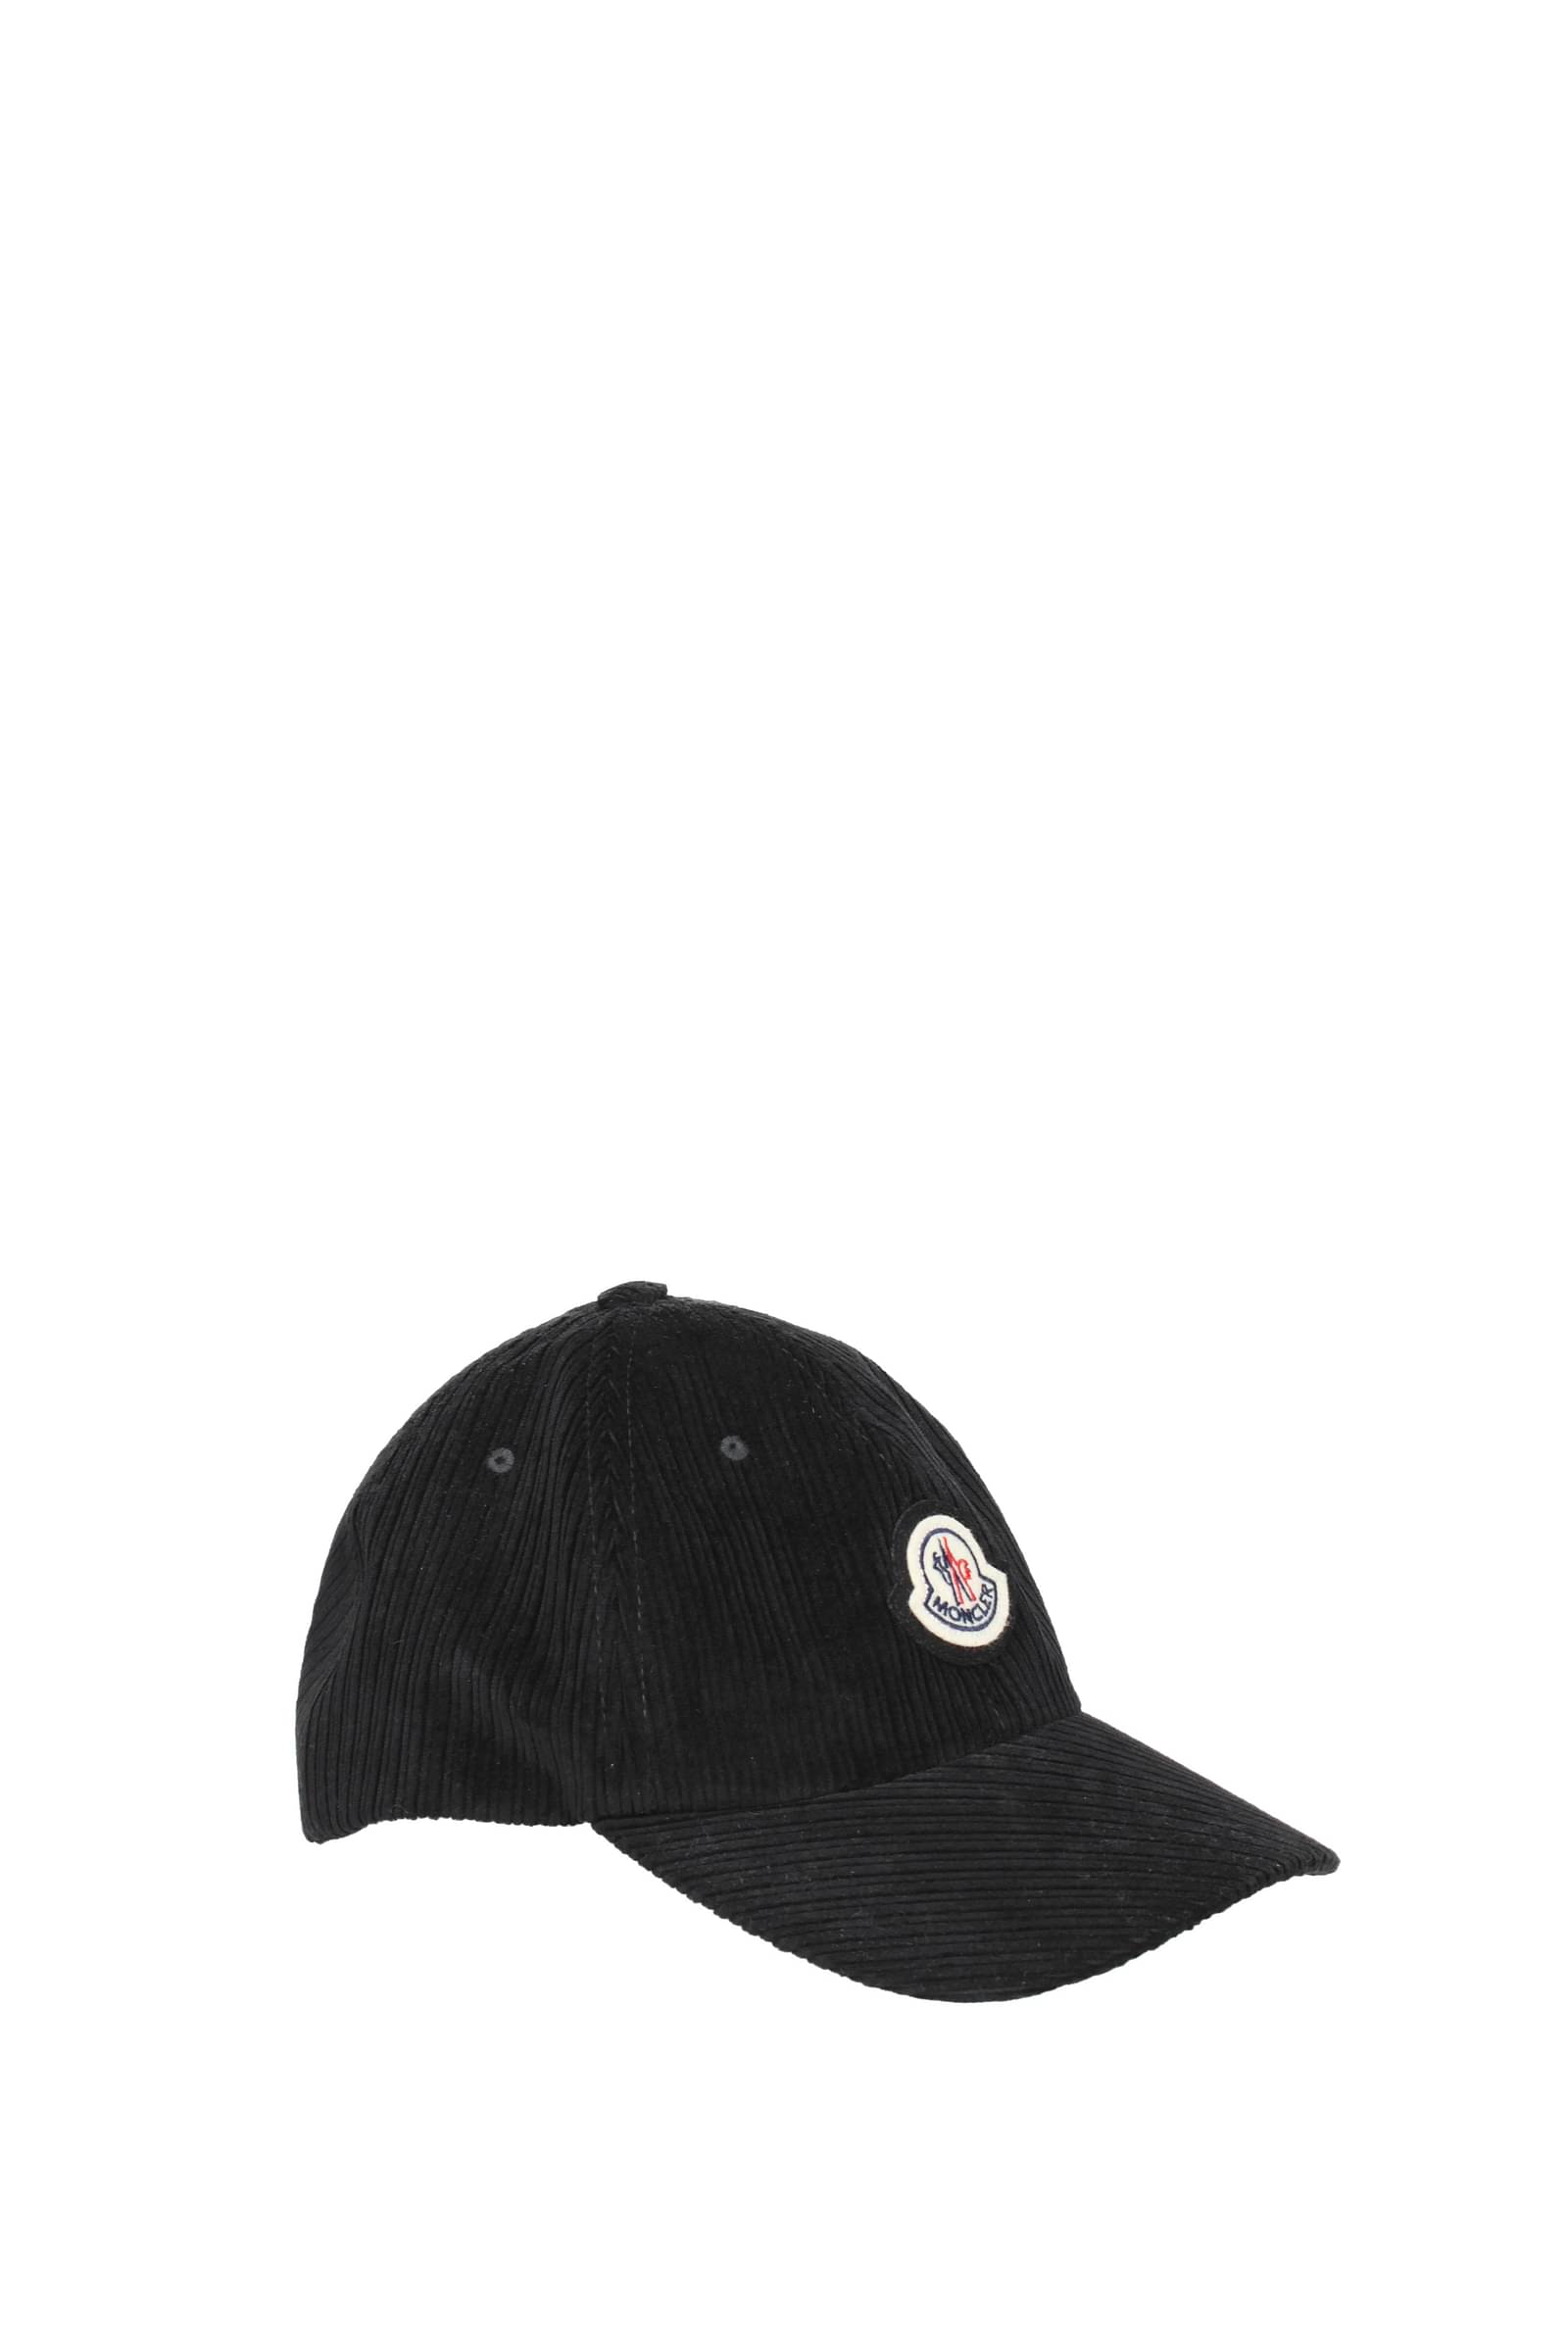 Moncler 帽子男士3B00016596E3999 棉花黑色196,88€